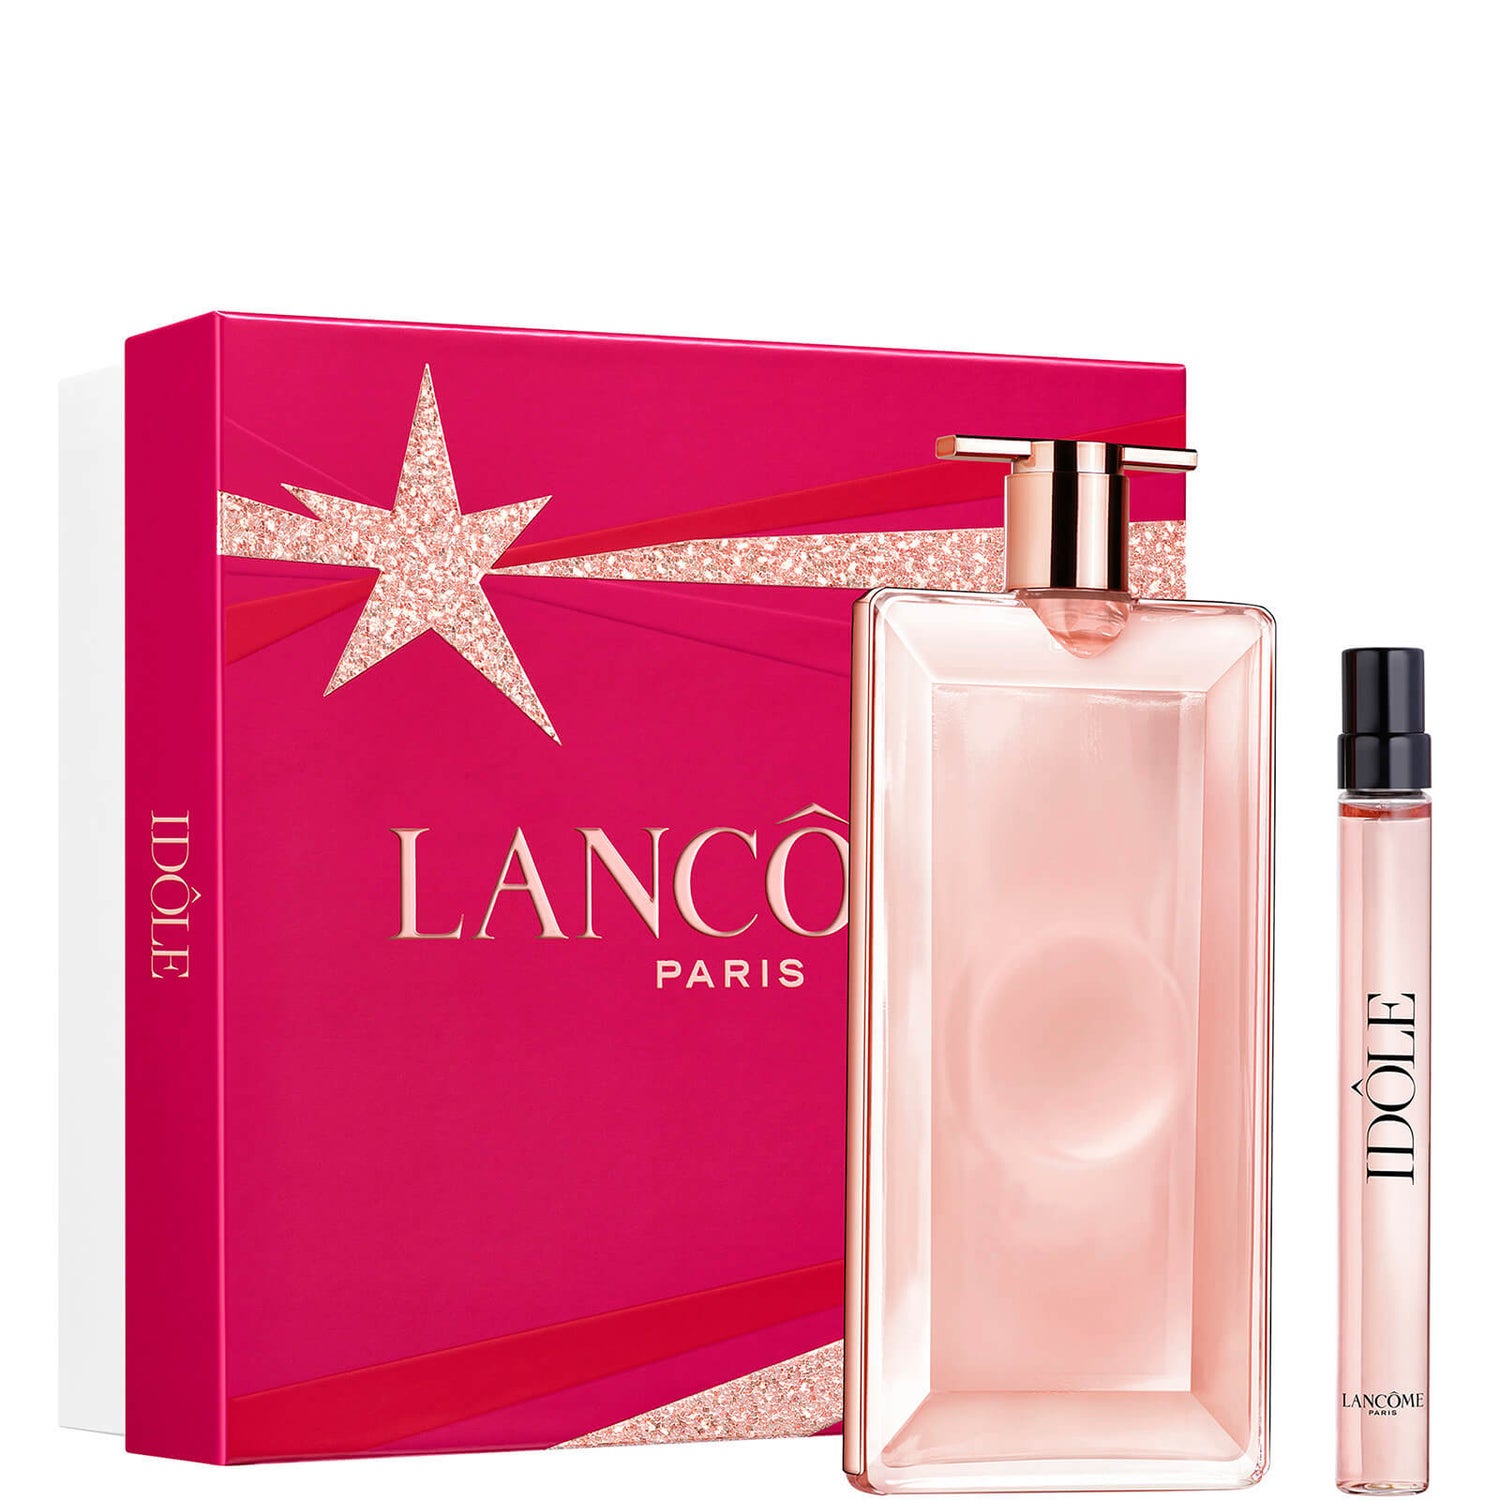 Lancôme Idôle Eau De Parfum 50ml Christmas Gift Set (Worth £91.00)